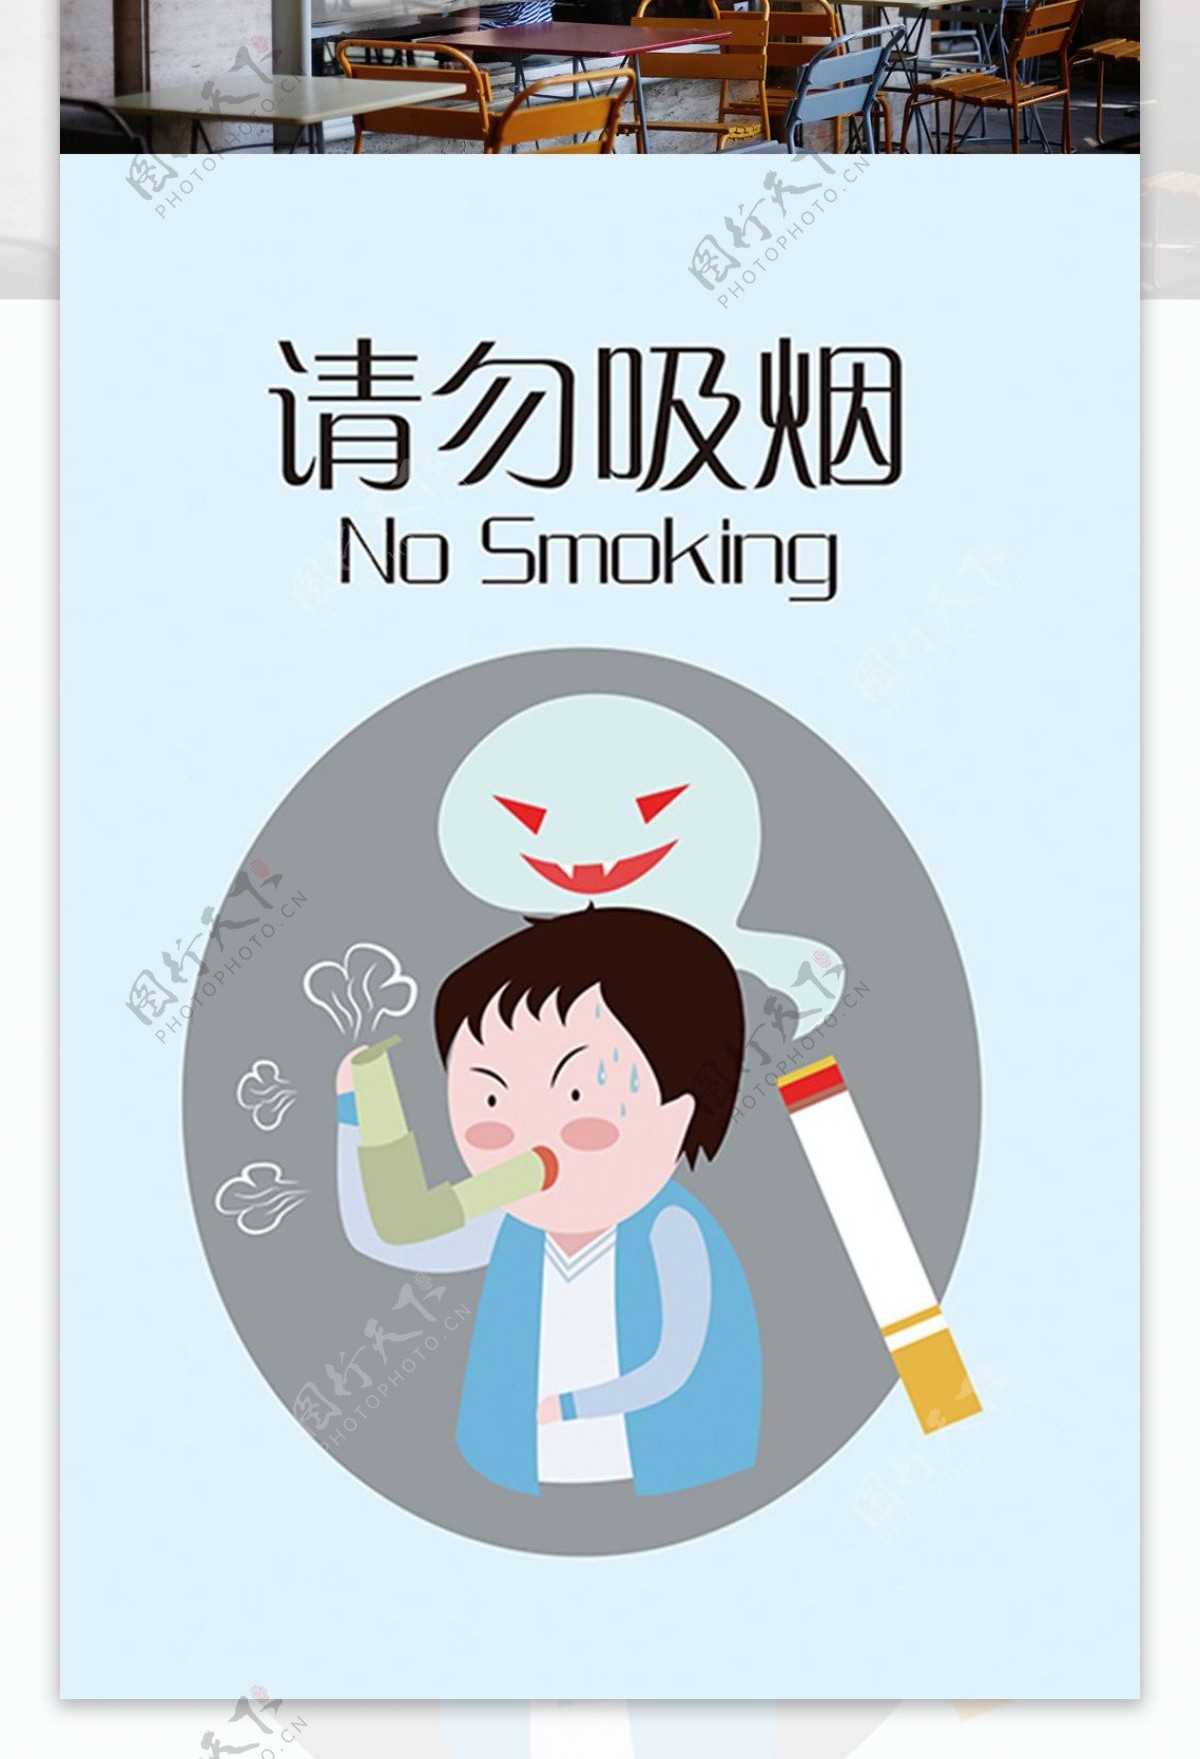 温馨提示请勿吸烟提示矢量公益海报